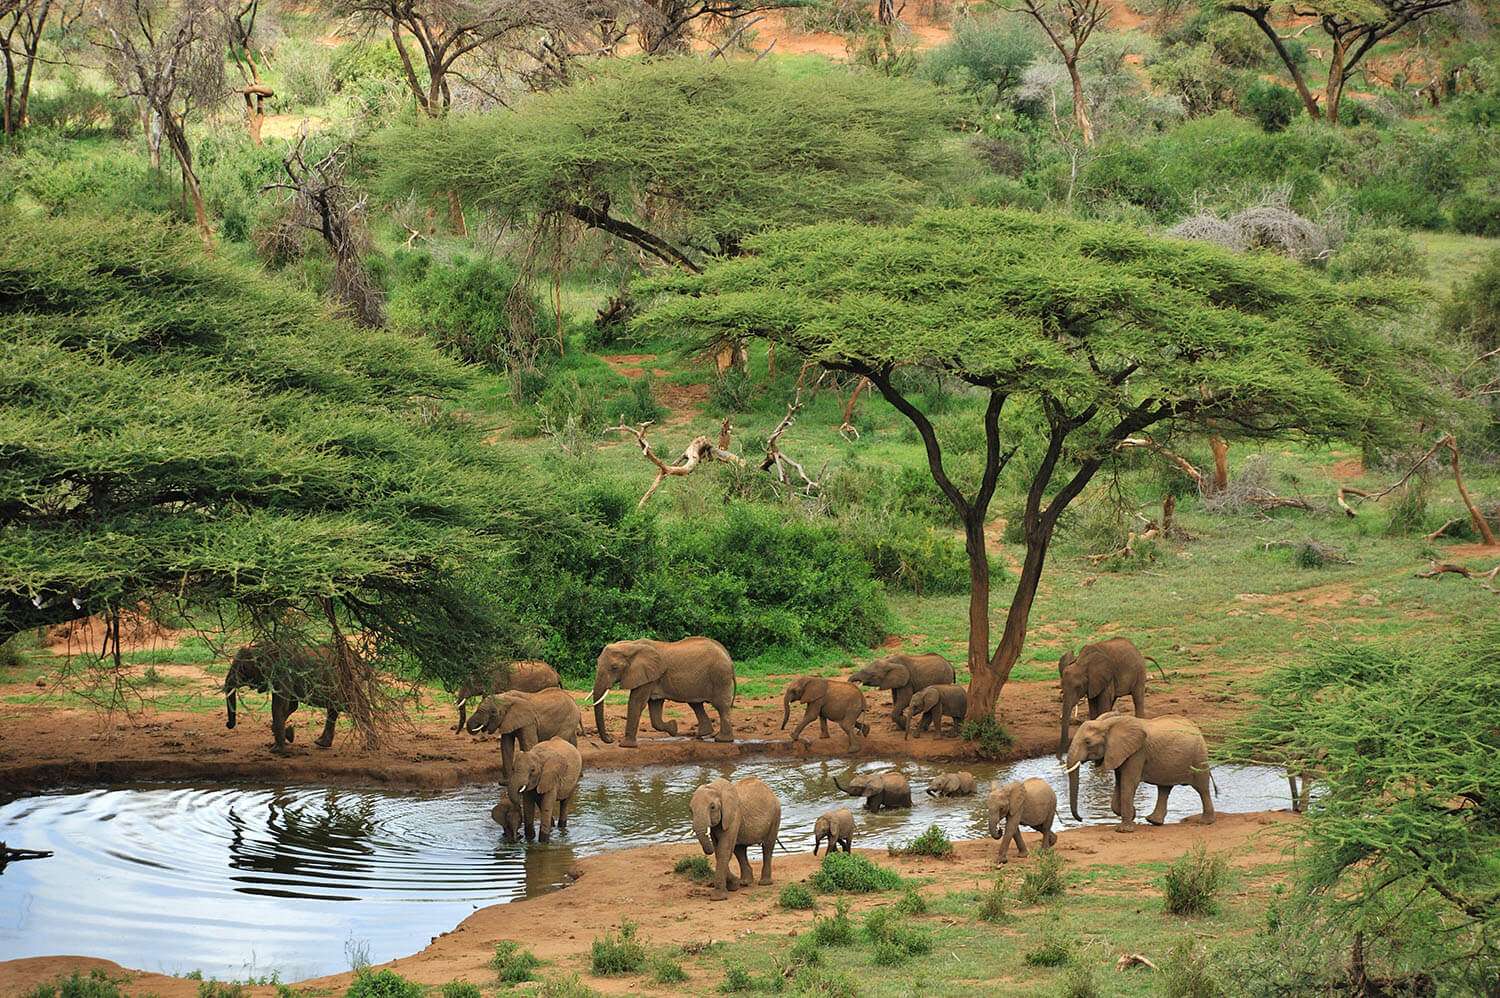 Elephants by water